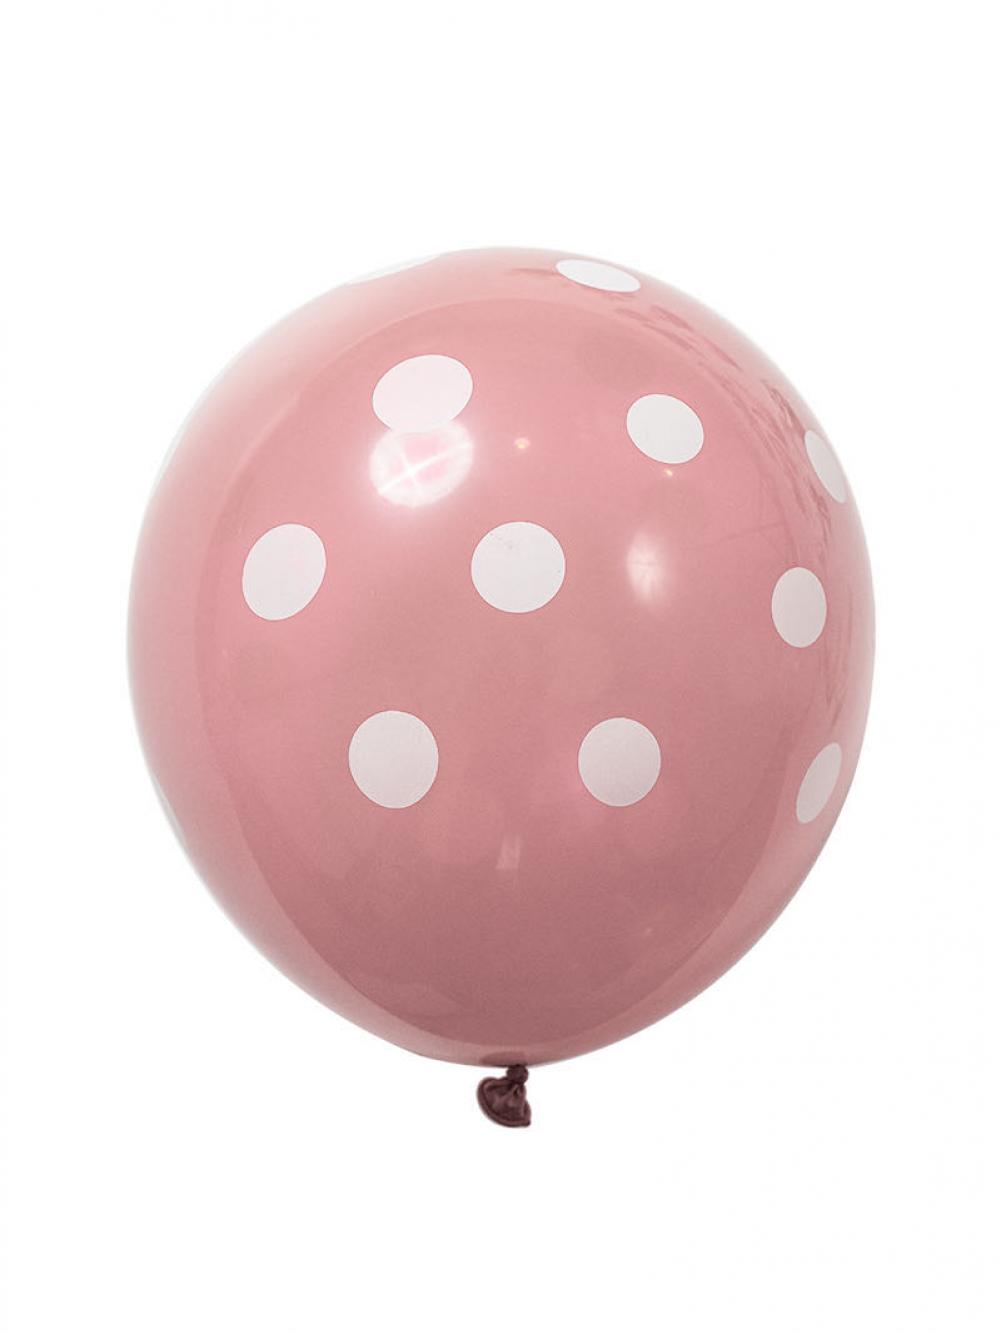 12 Inch Standard Polka Dot Balloons Neon Pink Balloon White Dot (100PCS)